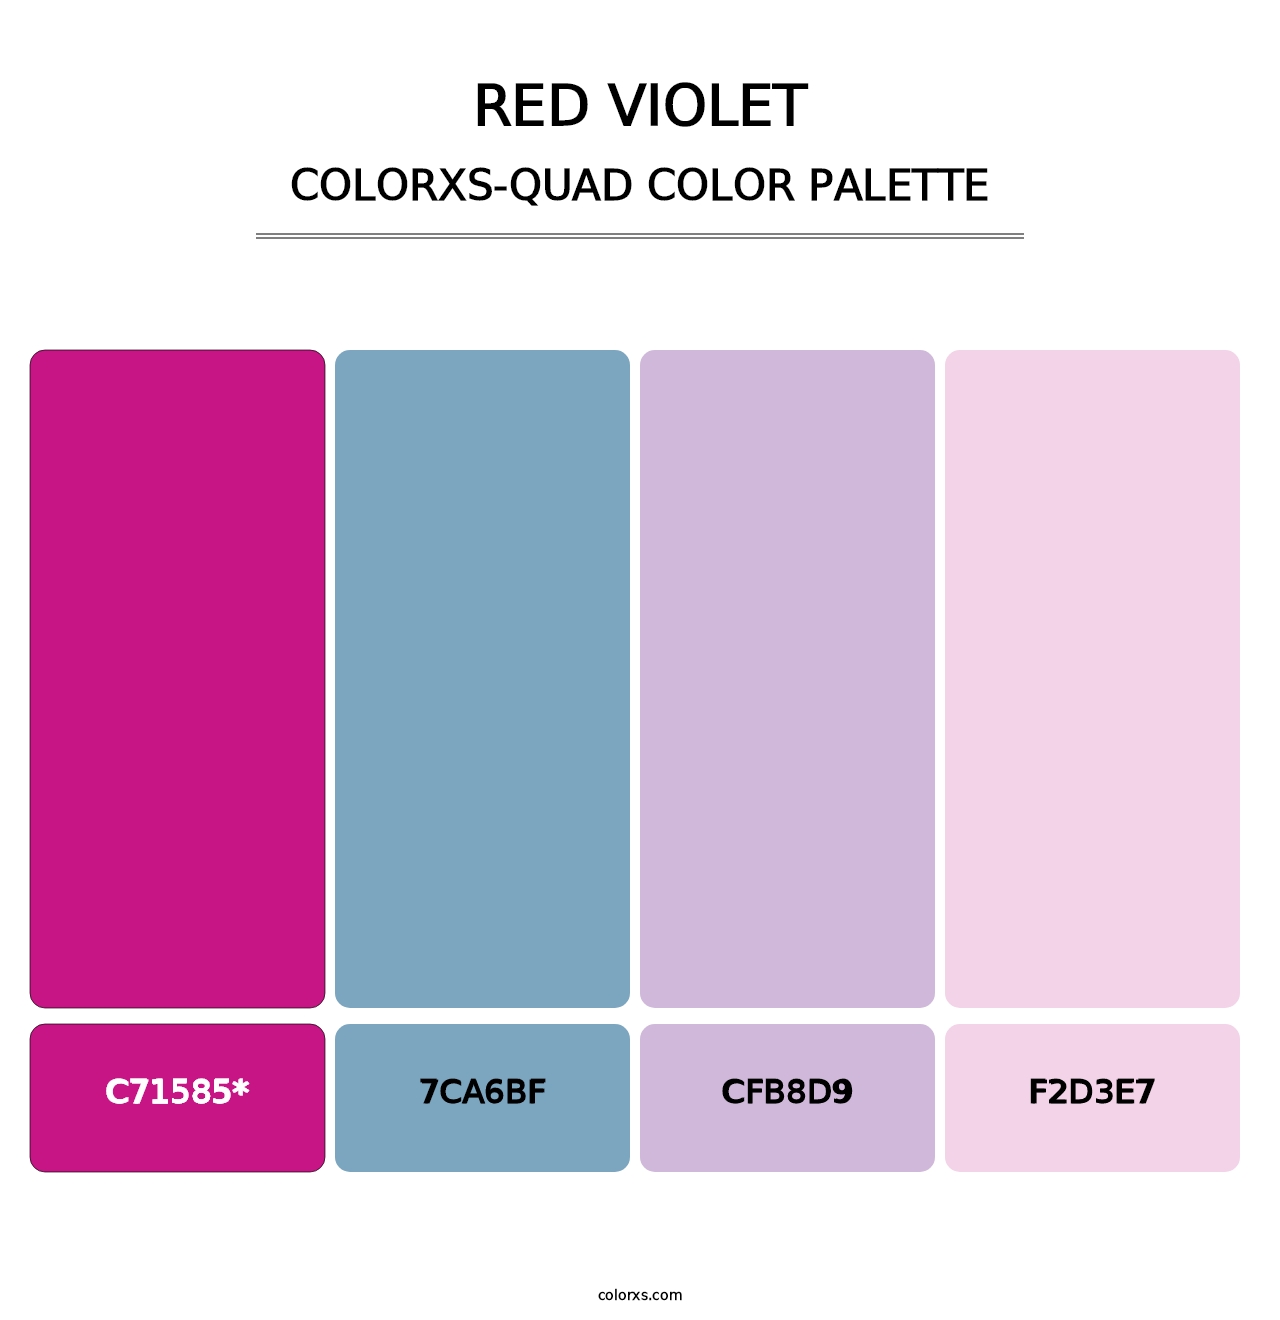 Red Violet - Colorxs Quad Palette